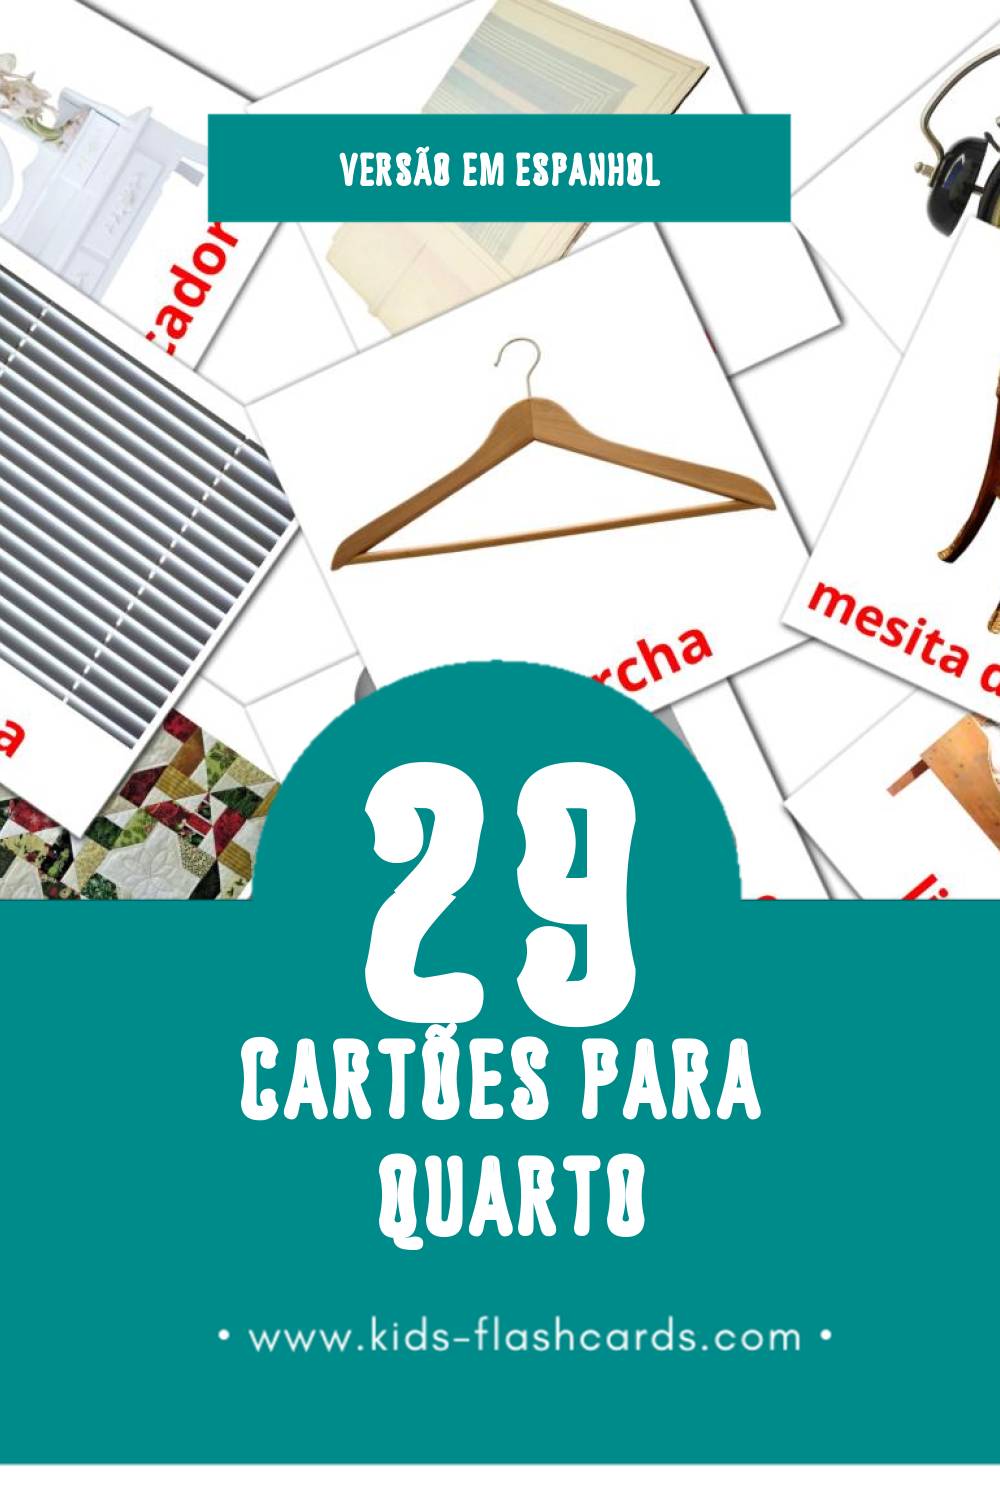 Flashcards de Dormitorio Visuais para Toddlers (33 cartões em Espanhol)